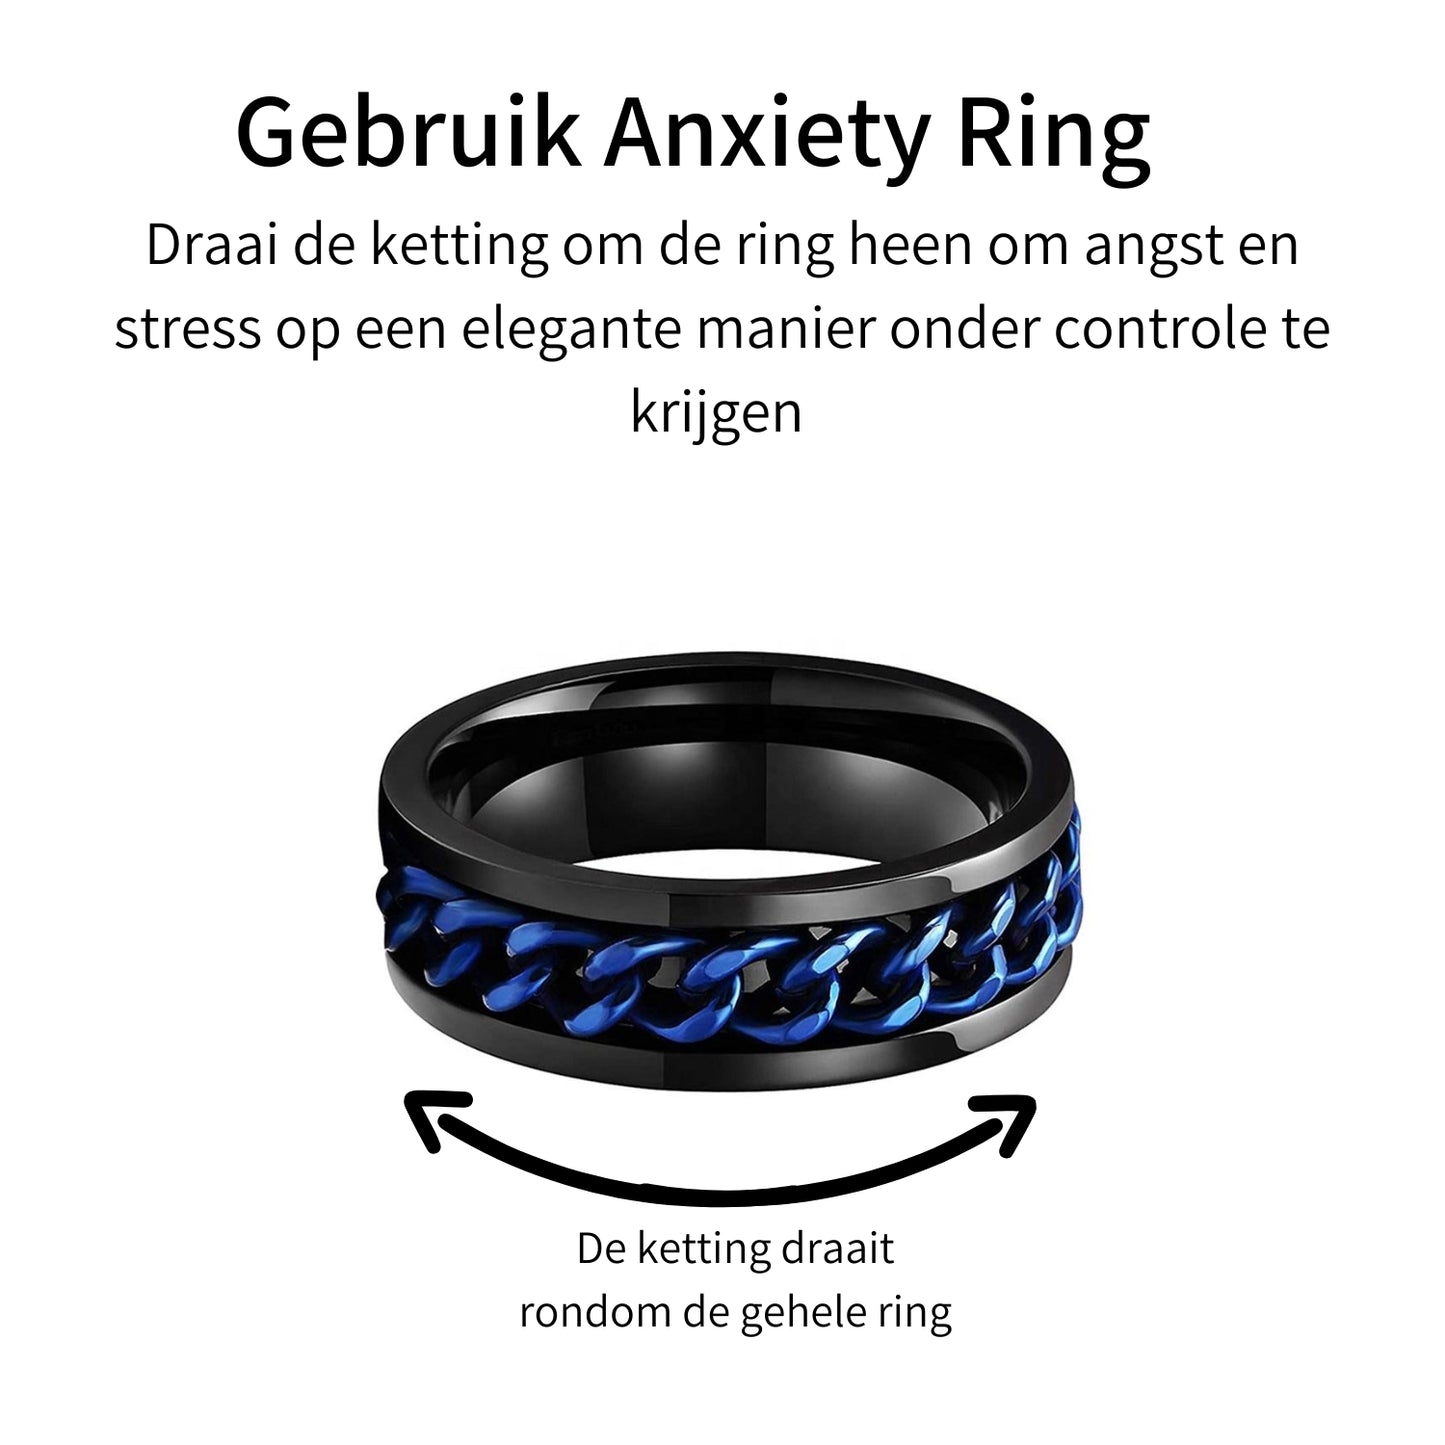 Anxiety Ring (Kettinkje) Blauwe ketting Zwarte ring Gebruik